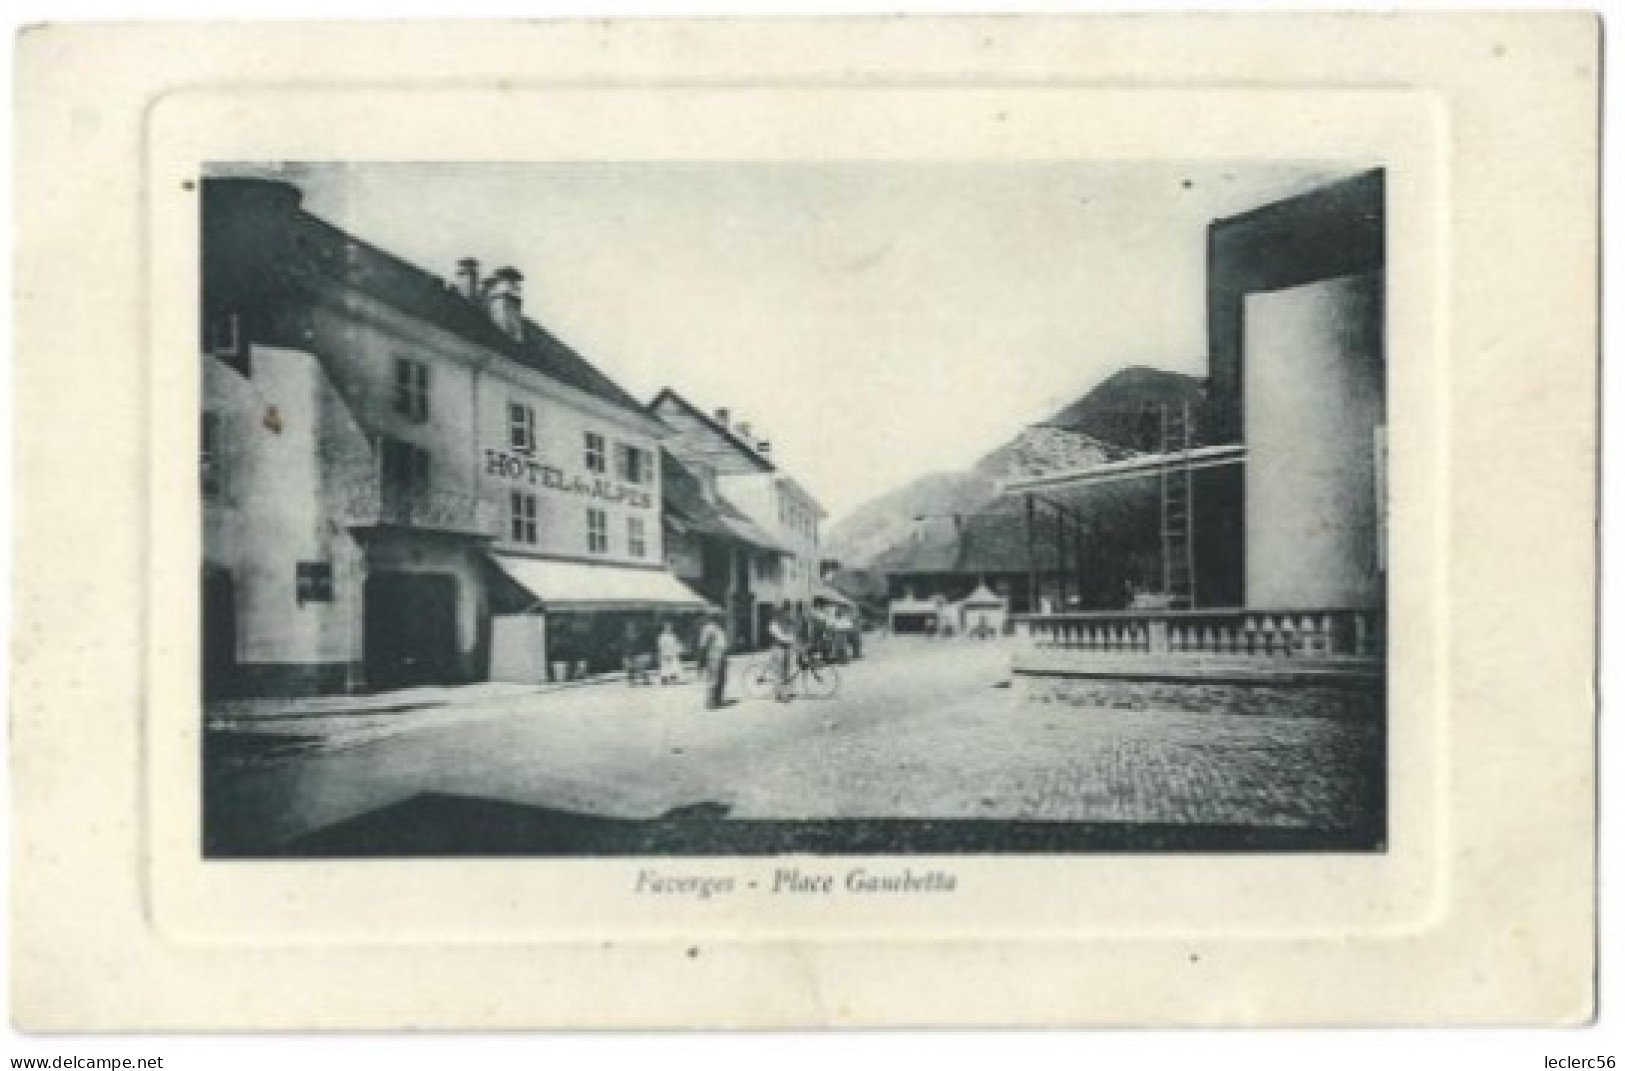 74 FAVERGES PLACE GAMBETTA Hôtel Des Alpes 1916 CPA 2 SCANS - Faverges